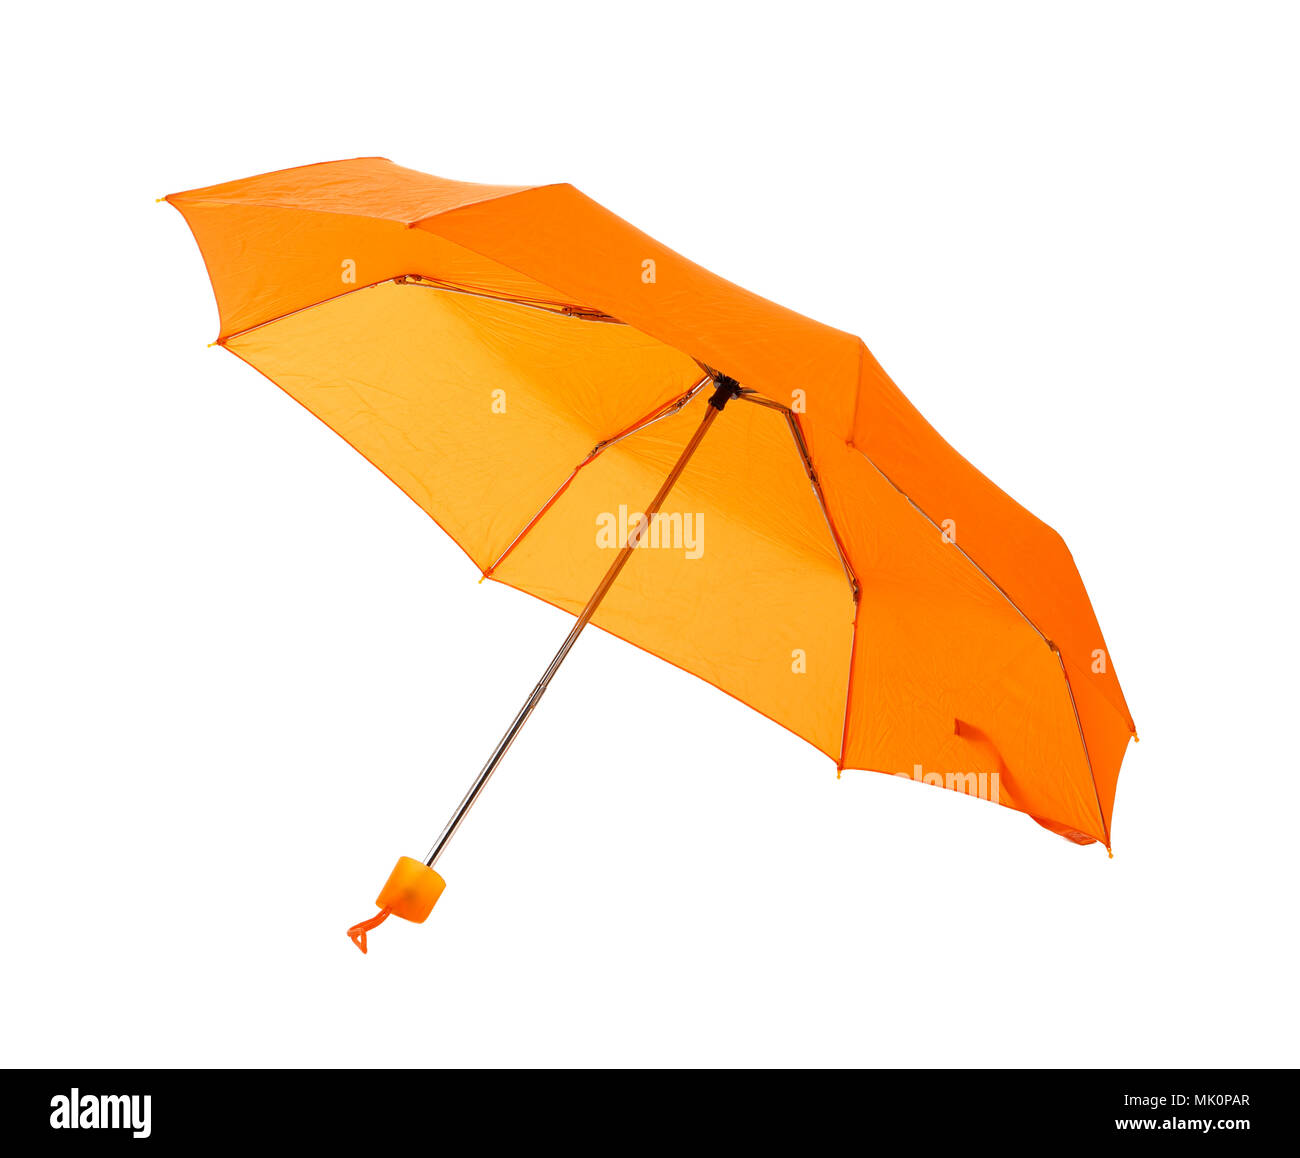 Parapluie de couleur orange isolé sur fond blanc Banque D'Images